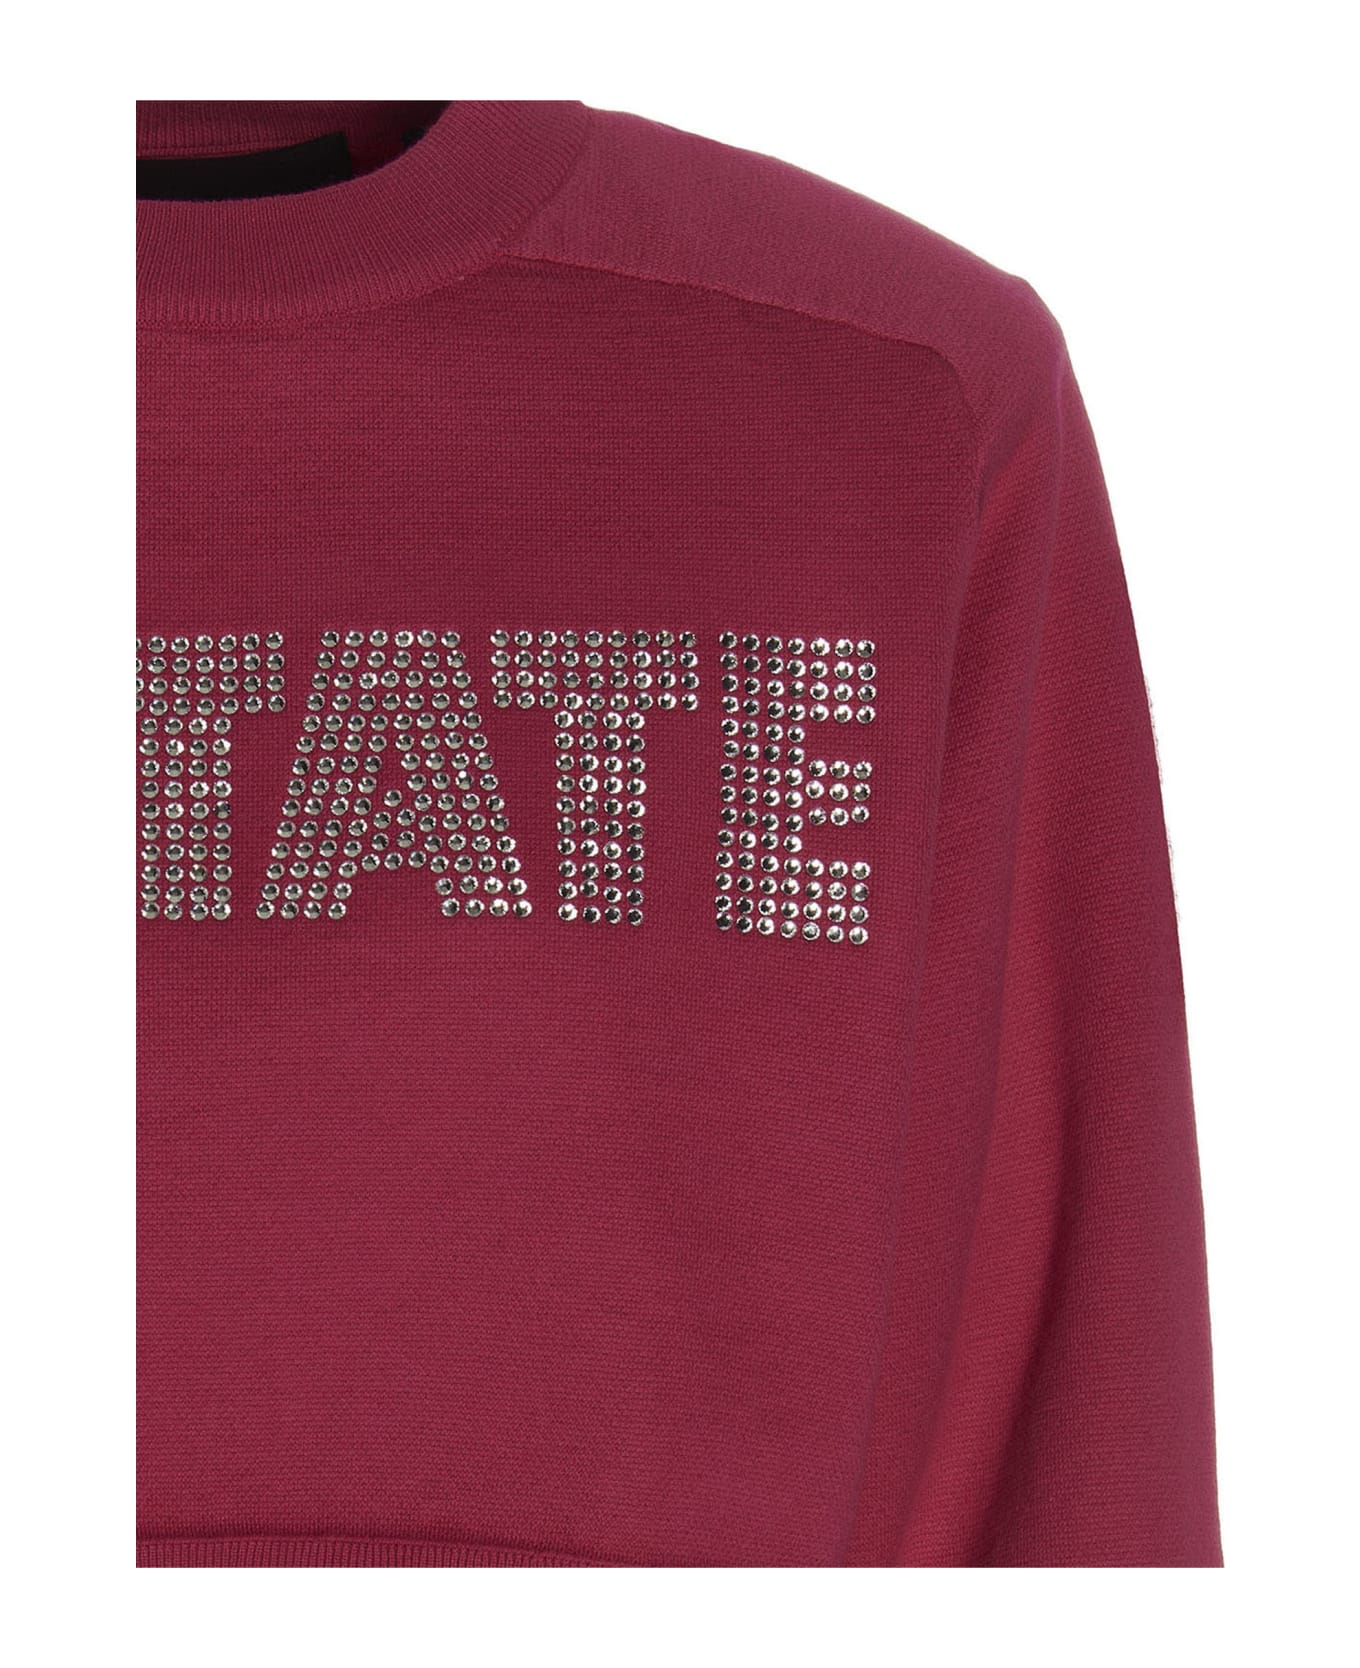 Rotate by Birger Christensen 'firm Rhinestone' Sweatshirt - Pink Glo